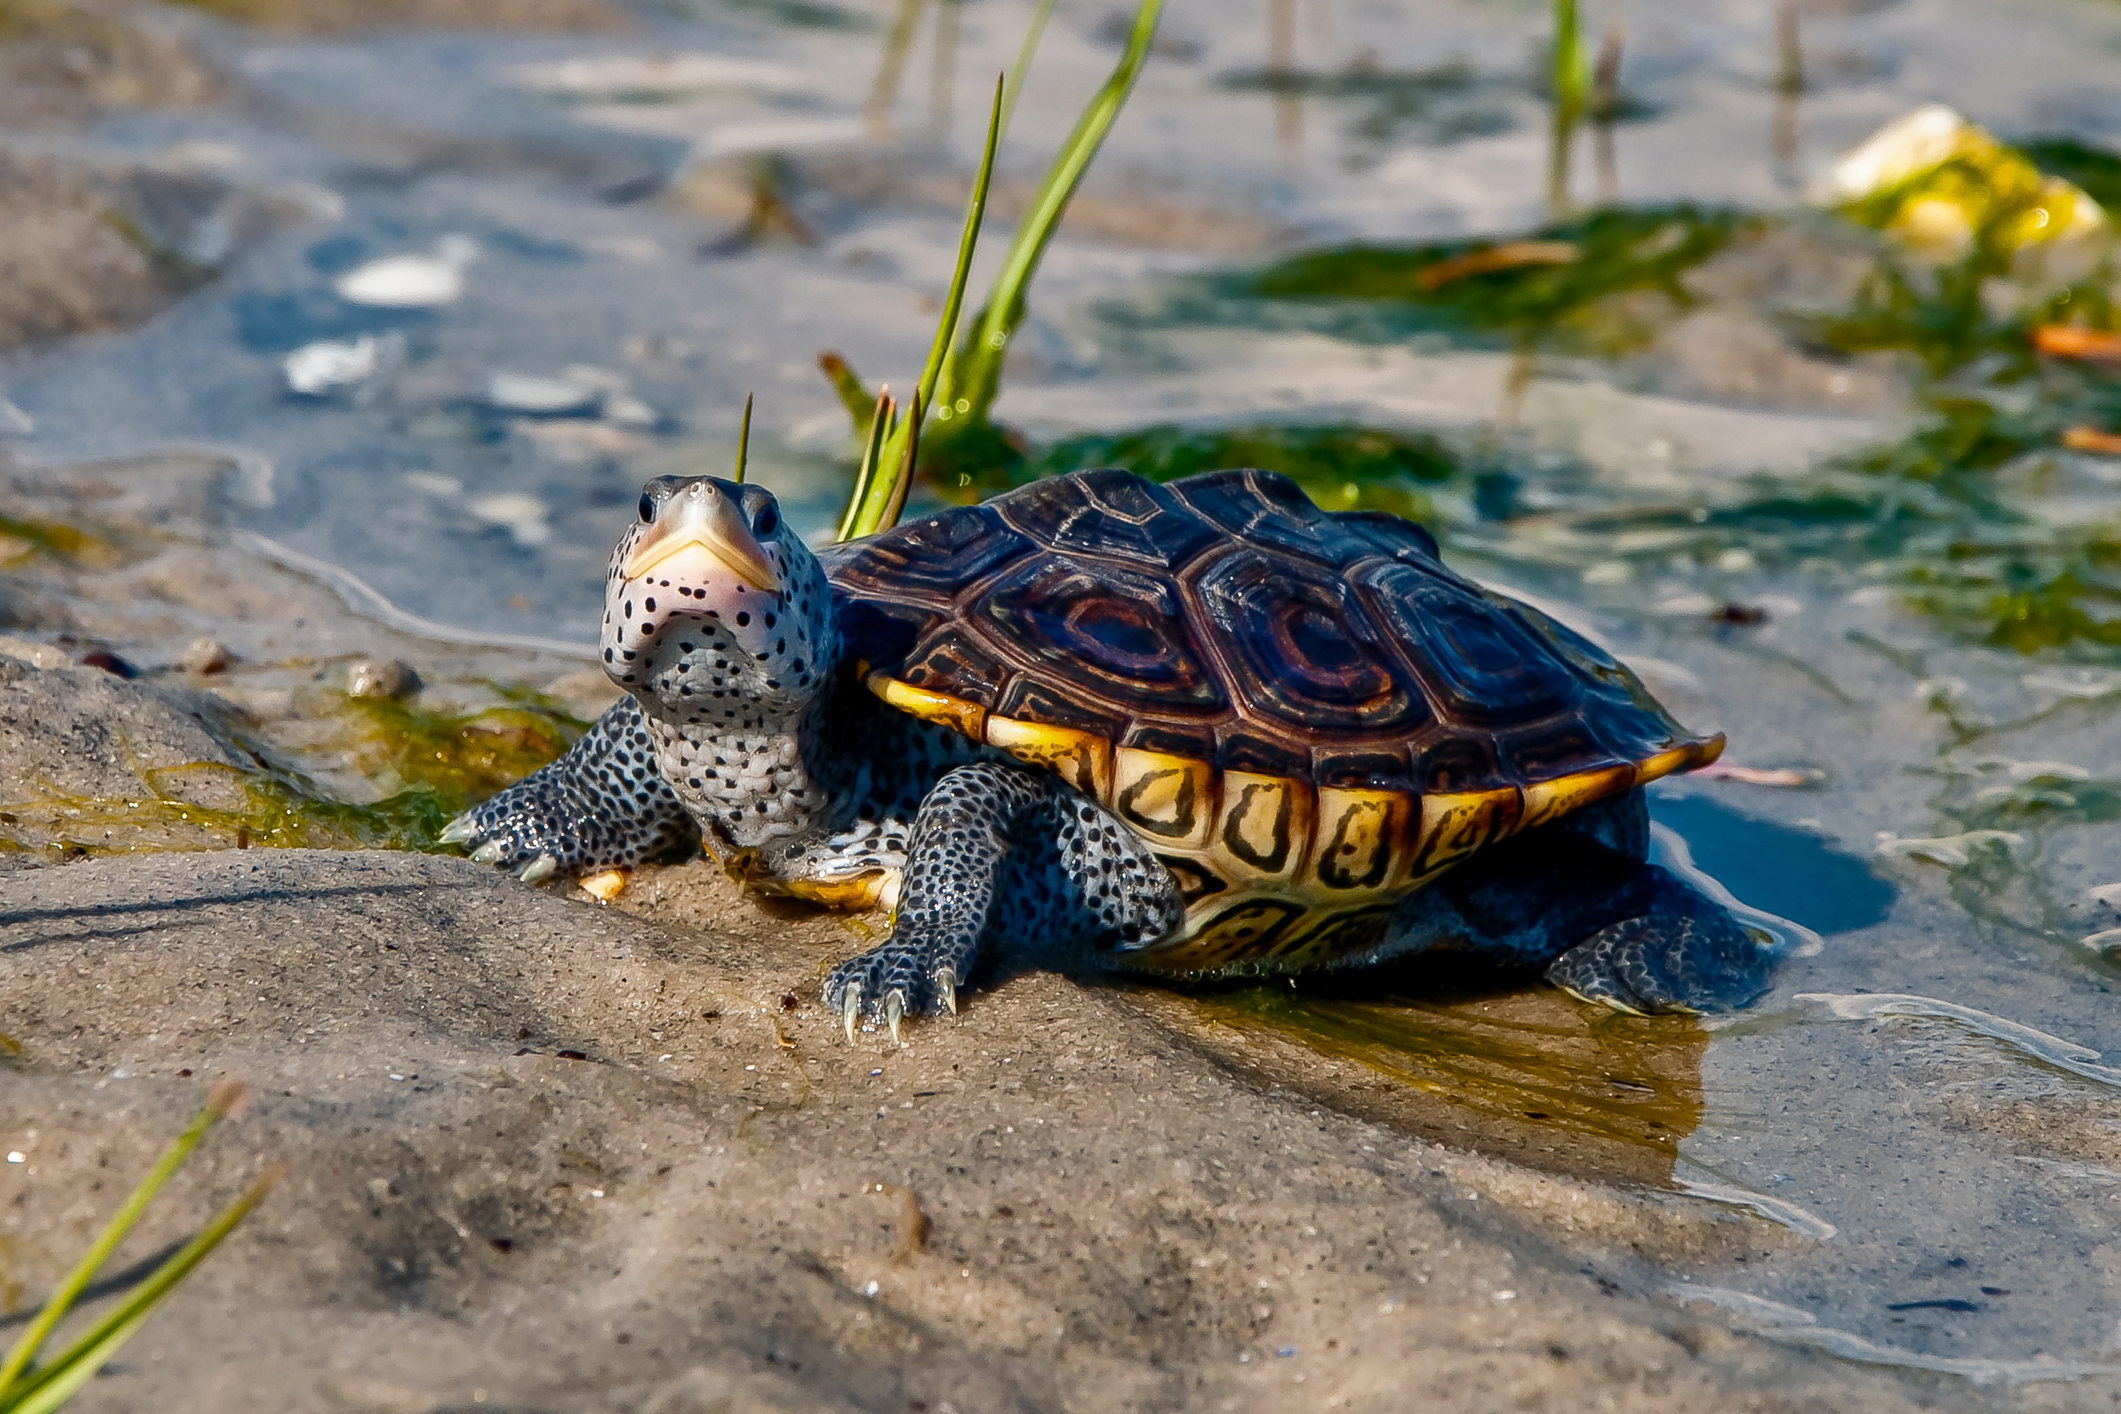 Diamondback Terrapin turtle in its natural habitat